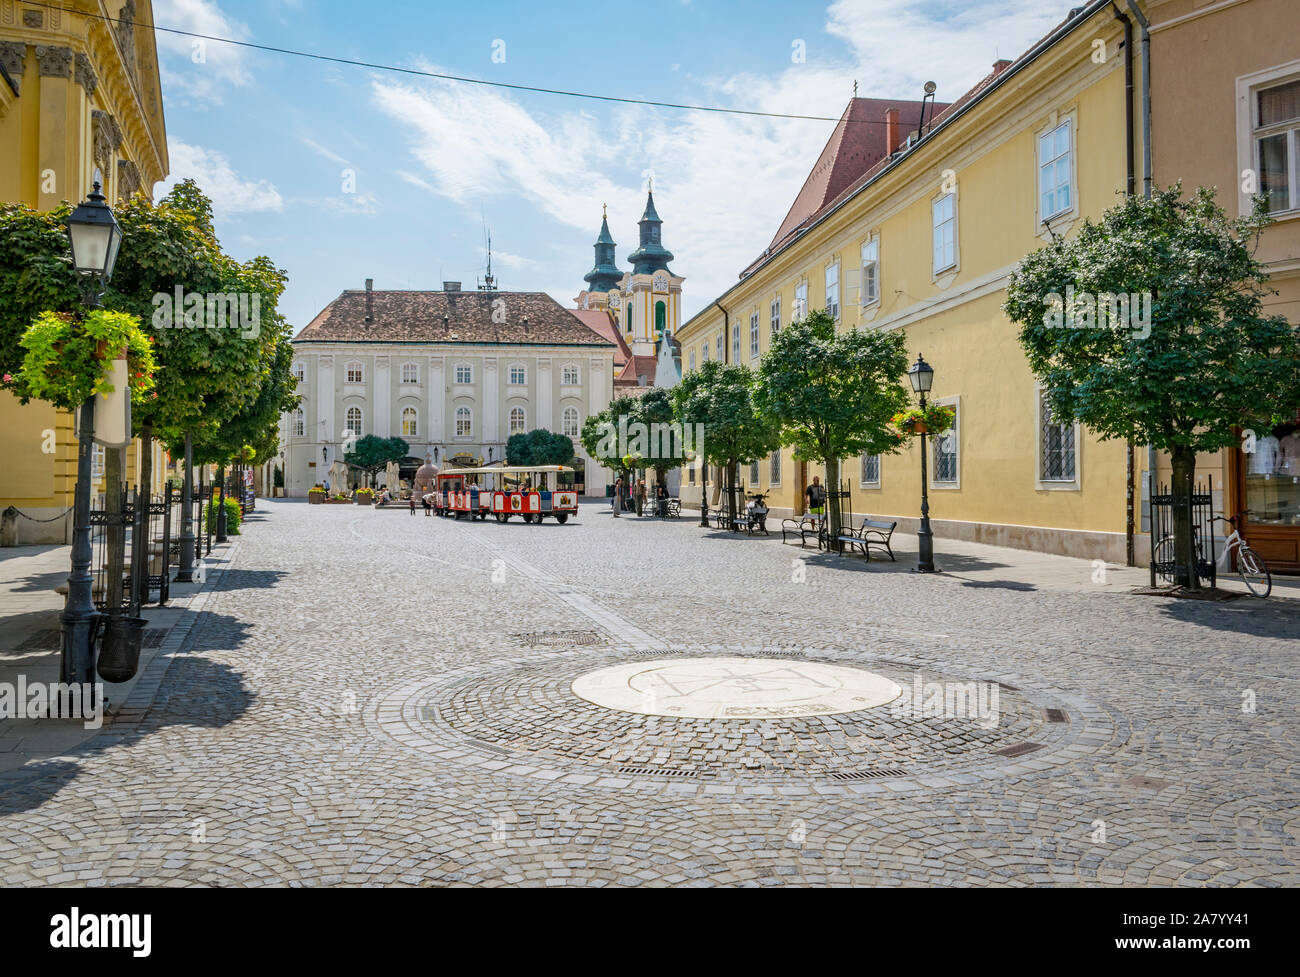 Hungarian rue menant à la place de la ville de Szekesfehervar, en Hongrie avec les tours de Saint Stephen's Basilica, l'Orbe et Kisvonat visites t Banque D'Images